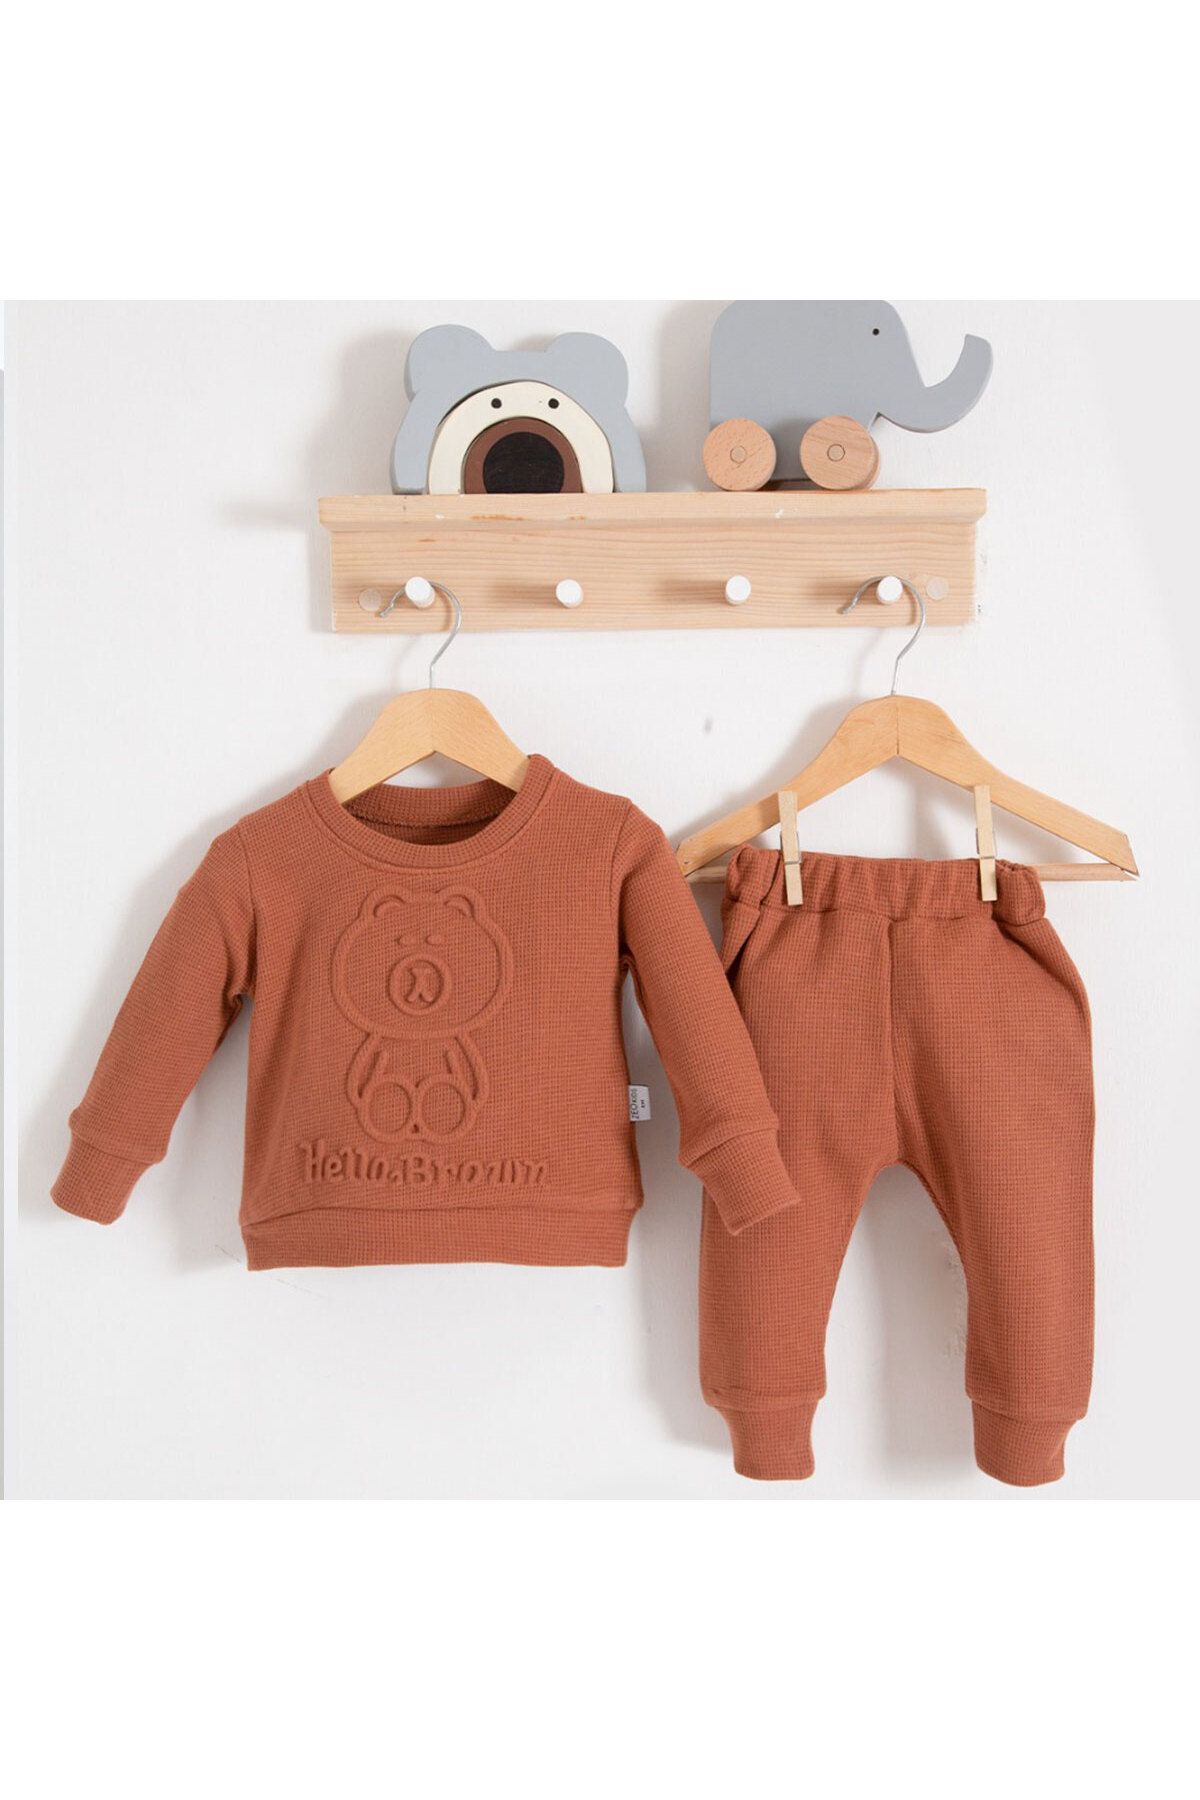 DIDuStore Erkek Bebek Takım Tarçın Sevimli Ayı Baskılı Üst ve Rahat Kesim Pantolon